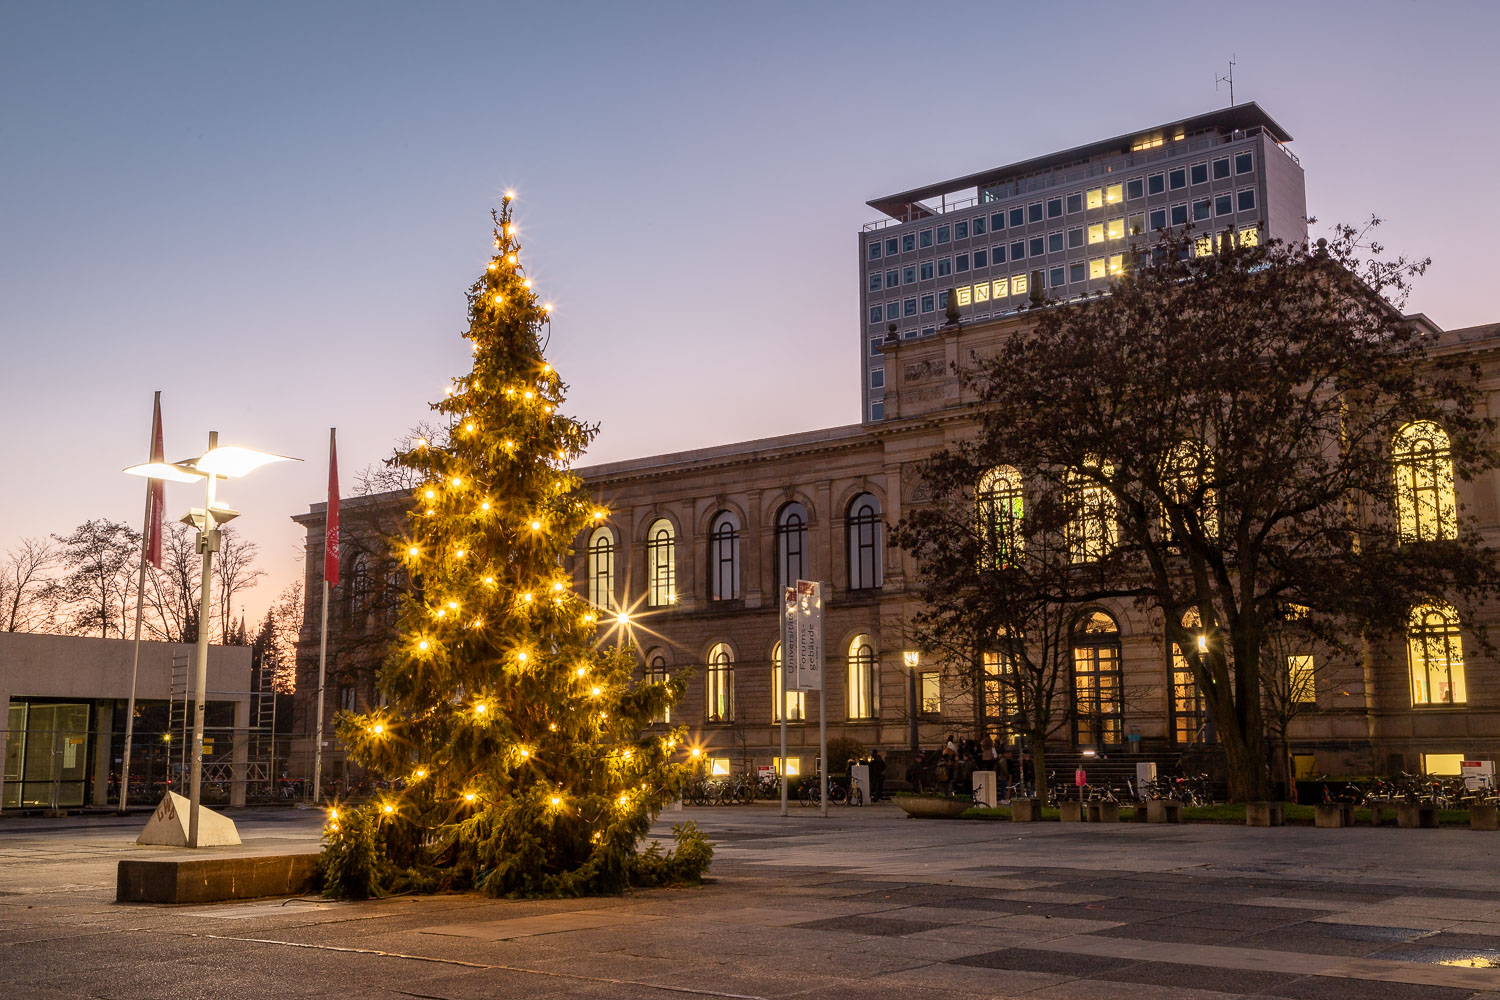 In diesem Jahr wurde eine Tanne vom Campus Nord als Weihnachtsbaum auf dem Universitätsplatz ausgewählt, die die aufgrund der mangelnden Standfestigkeit gefällt werden musste. Bildnachweis: Markus Hörster/TU Braunschweig